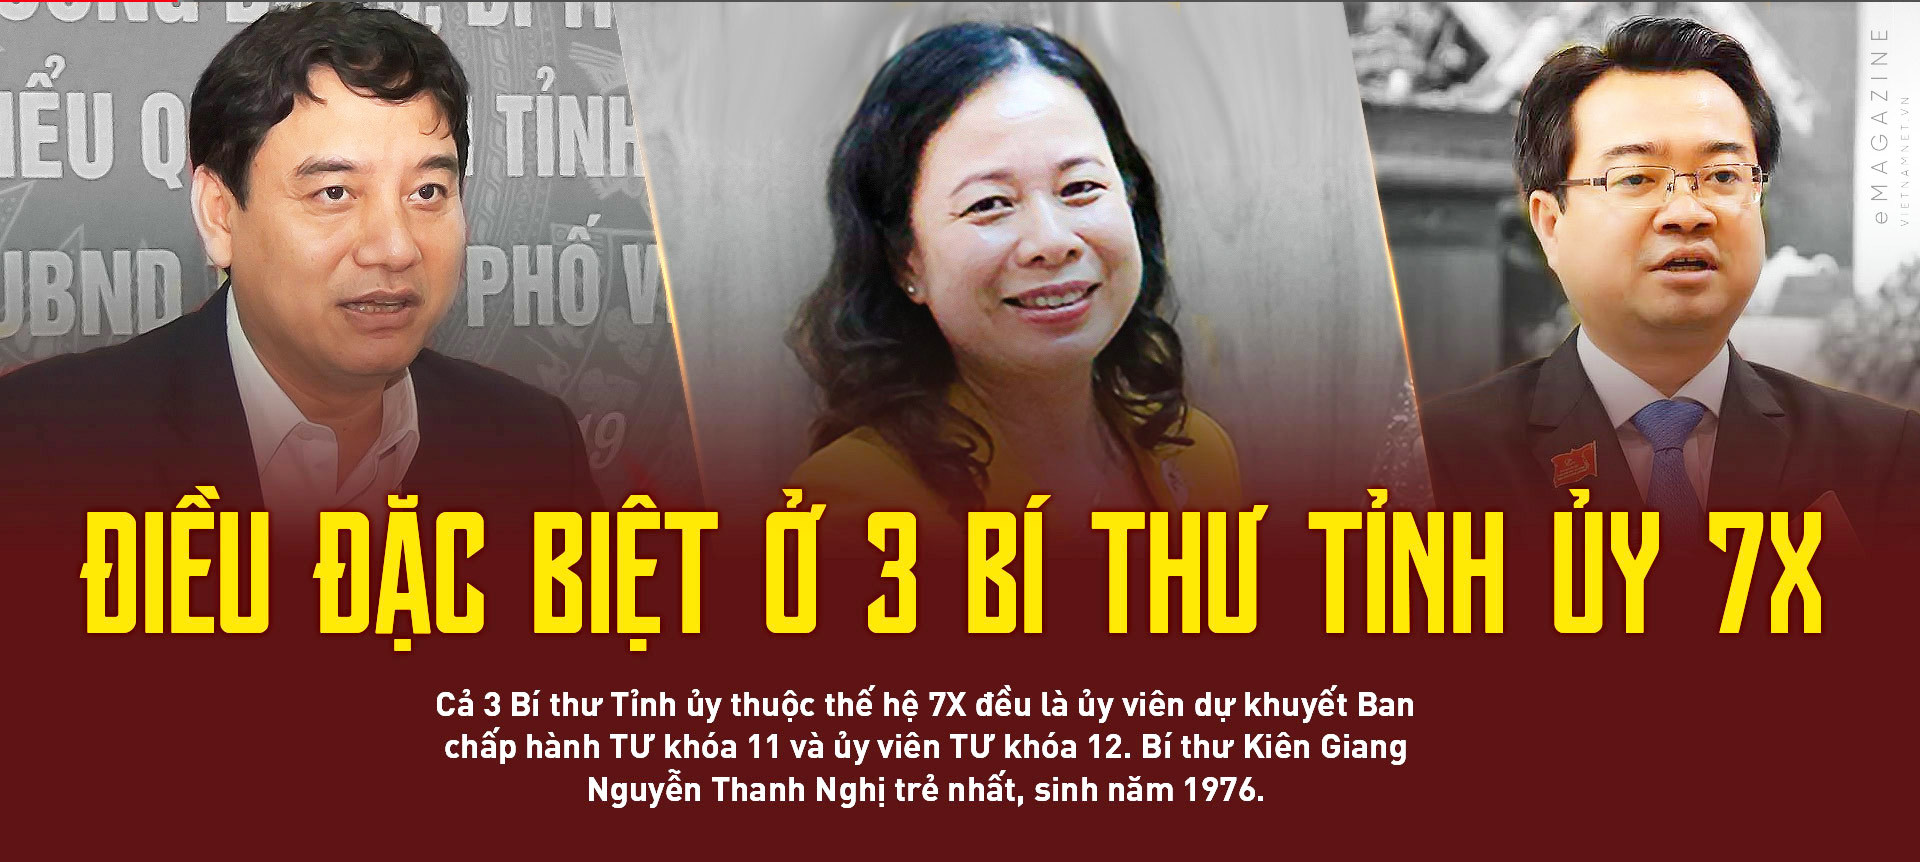 Nguyễn Thanh Nghị,Nguyễn Đắc Vinh,Võ Thị Anh Xuân,bí thư tỉnh ủy